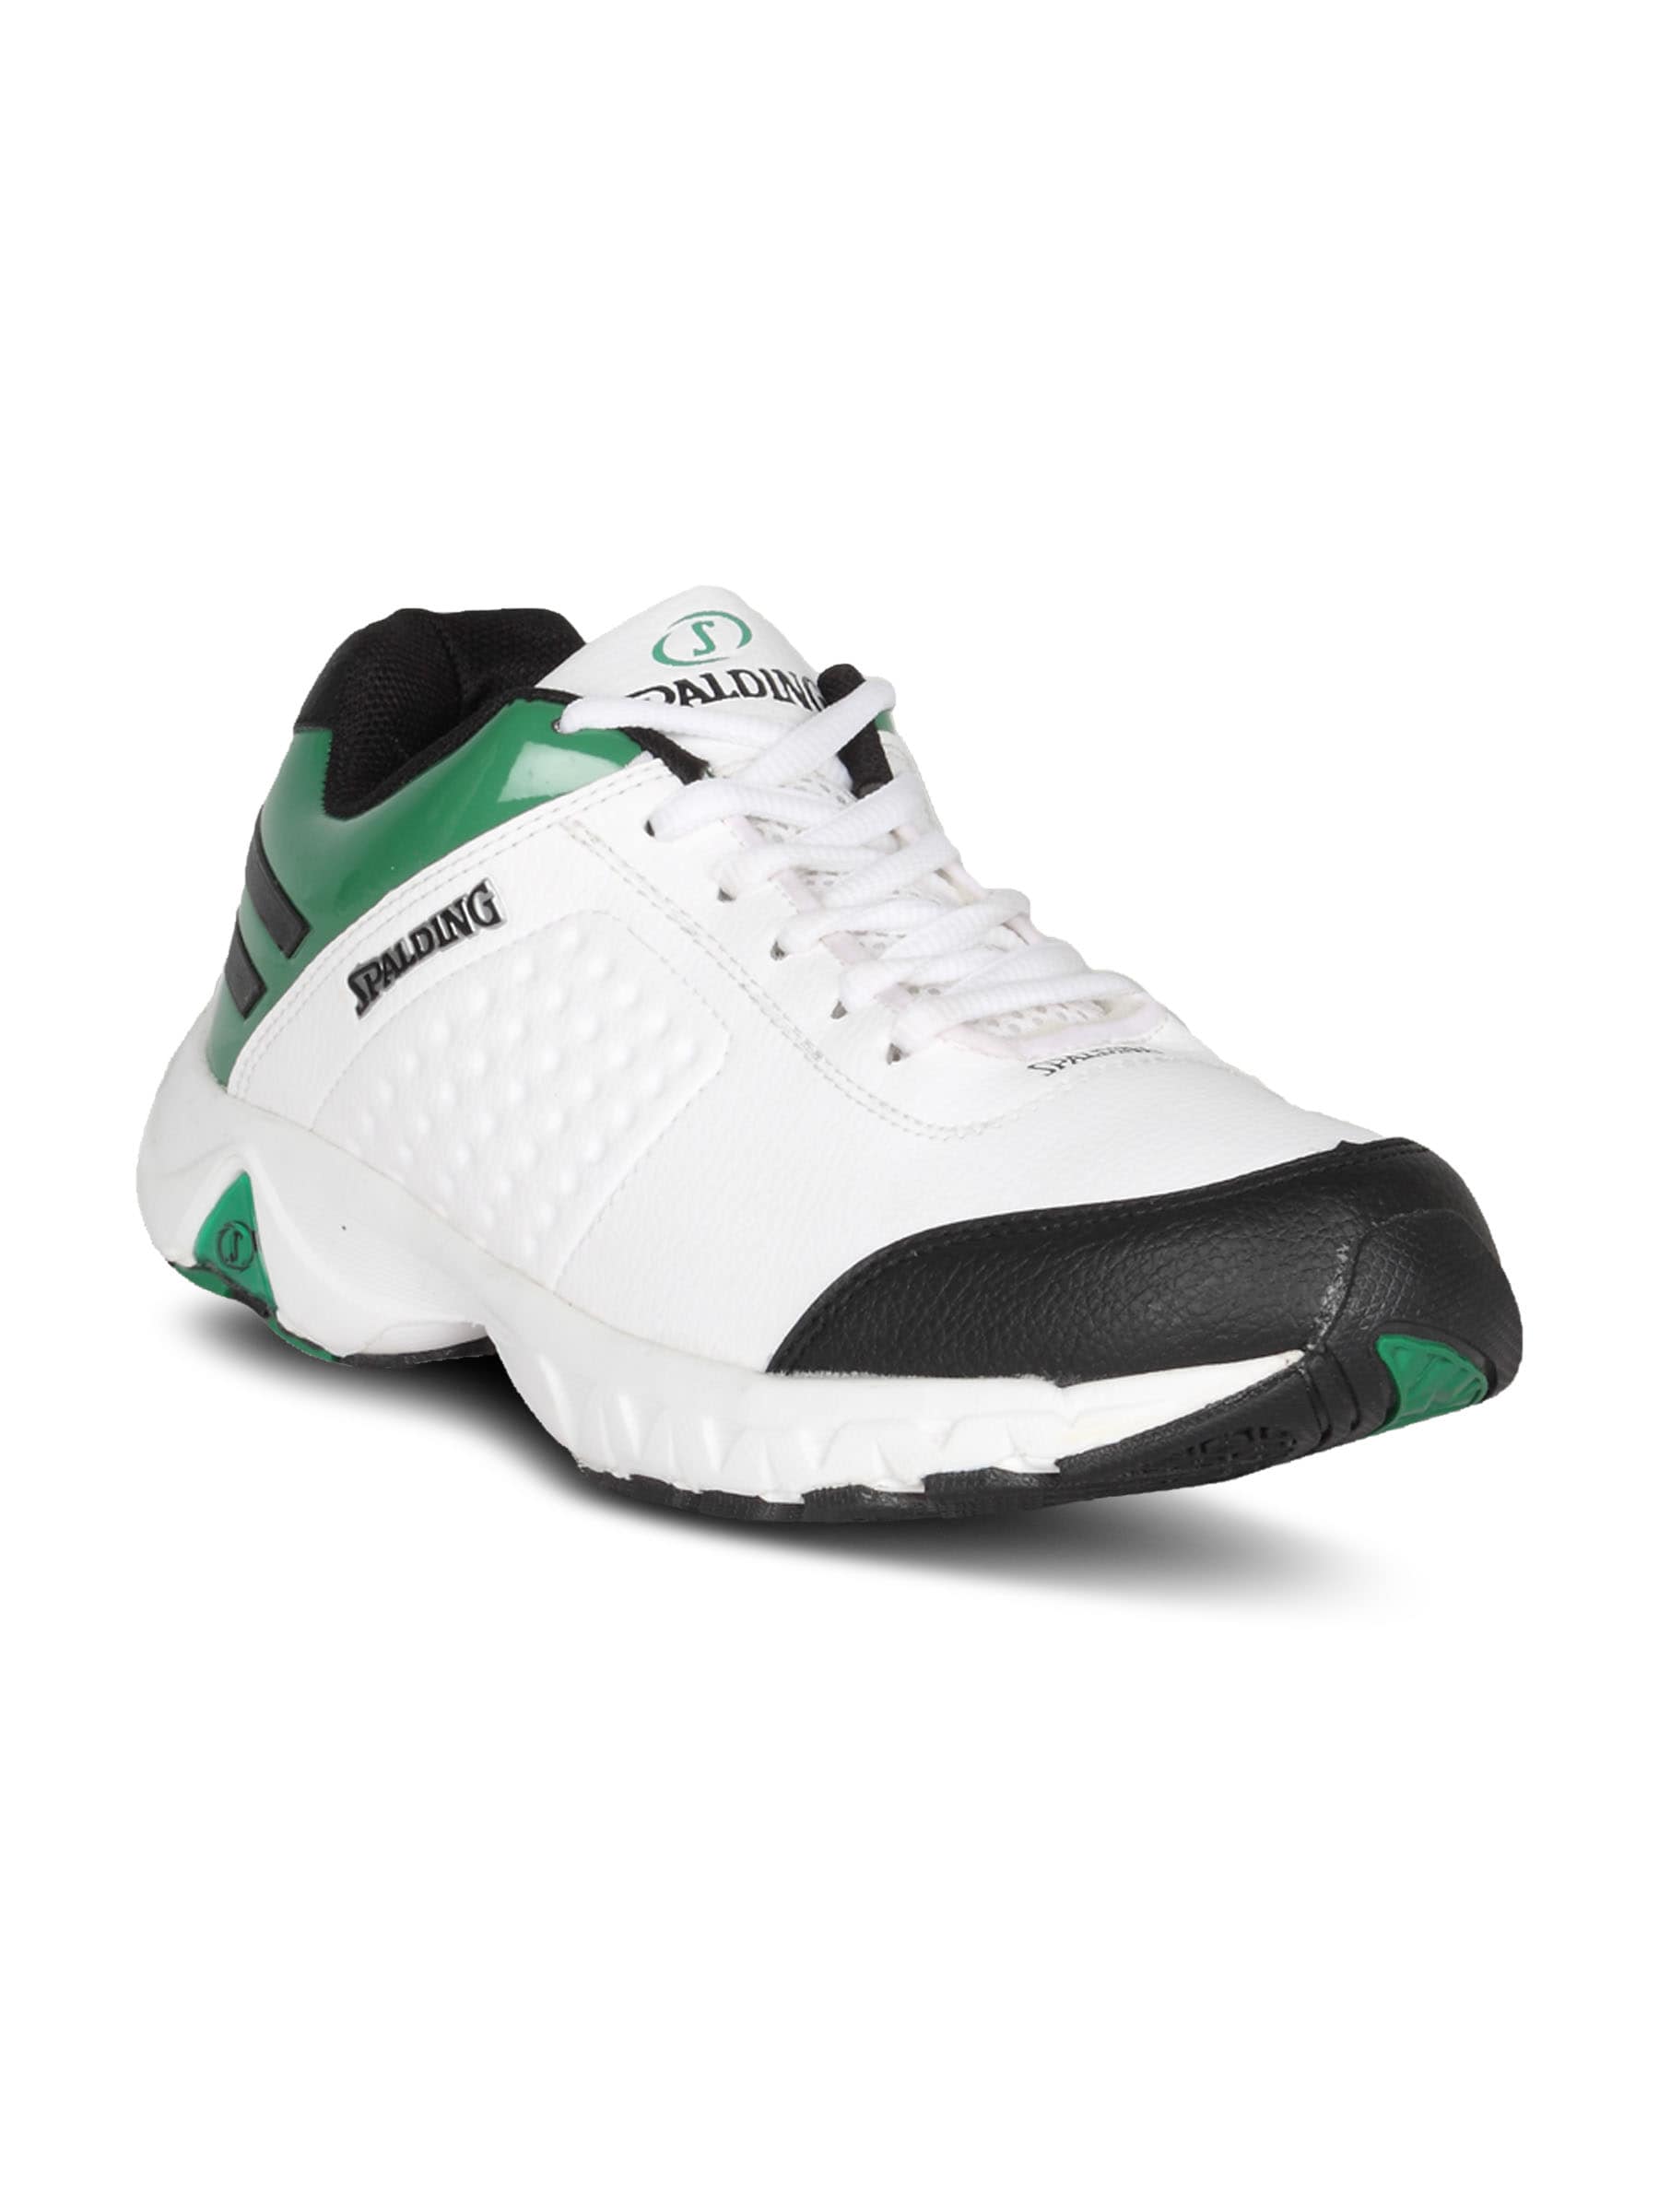 Spalding Men's Running White Green Shoe